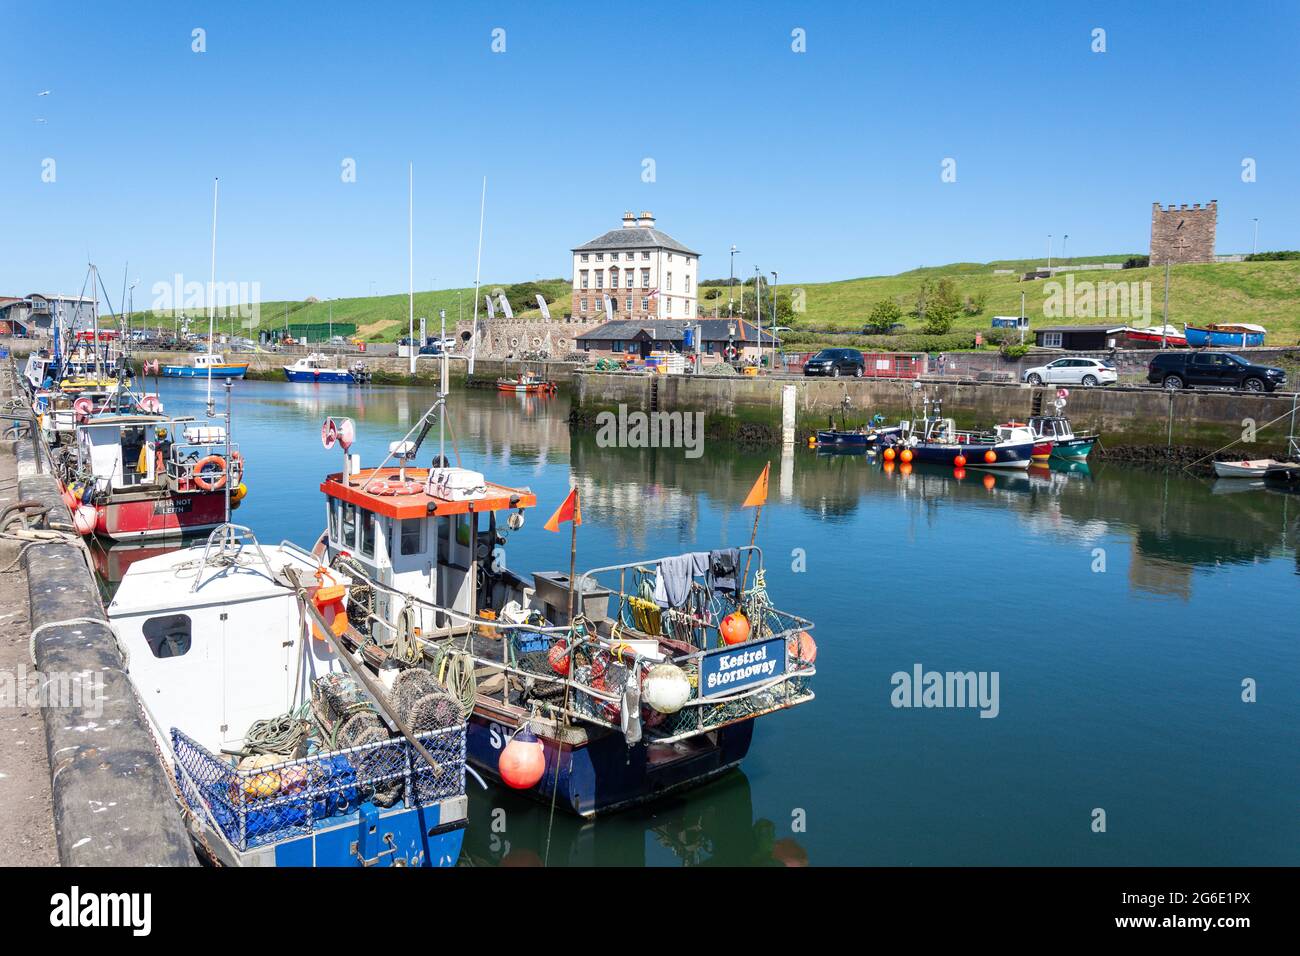 Gunsgreen House und Fischerboote, Gungreen Quay, Eyemouth Harbour, Eyemouth, Scottish Borders, Schottland, Vereinigtes Königreich Stockfoto